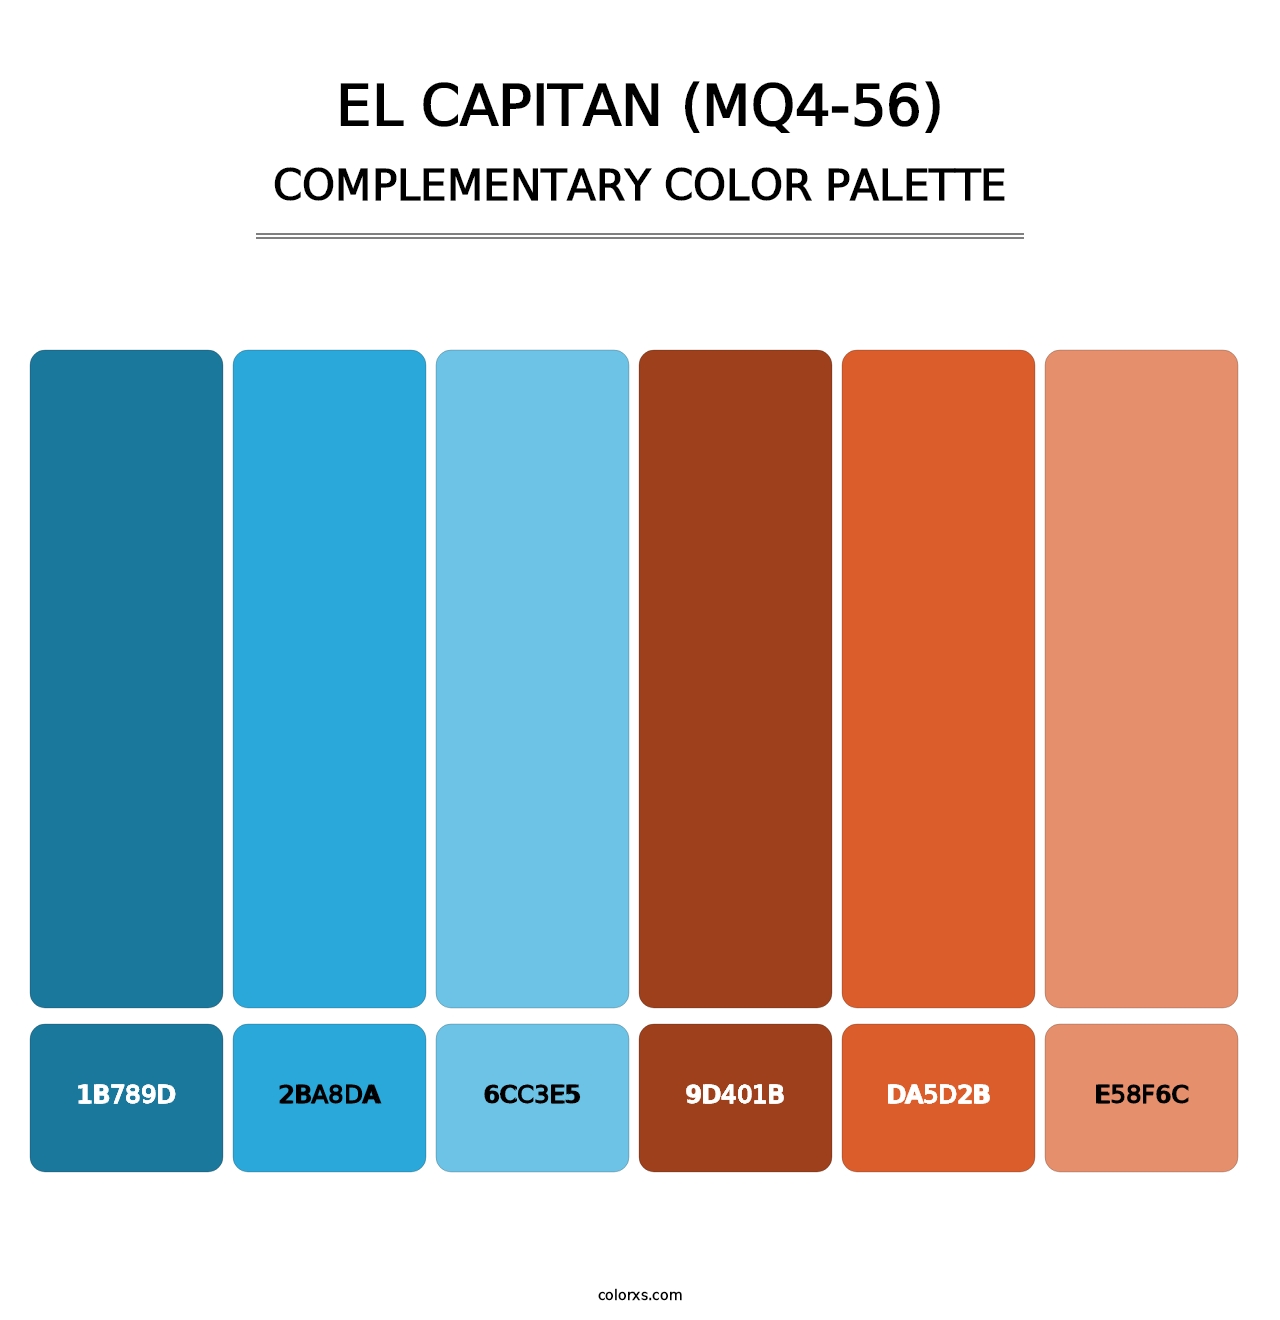 El Capitan (MQ4-56) - Complementary Color Palette